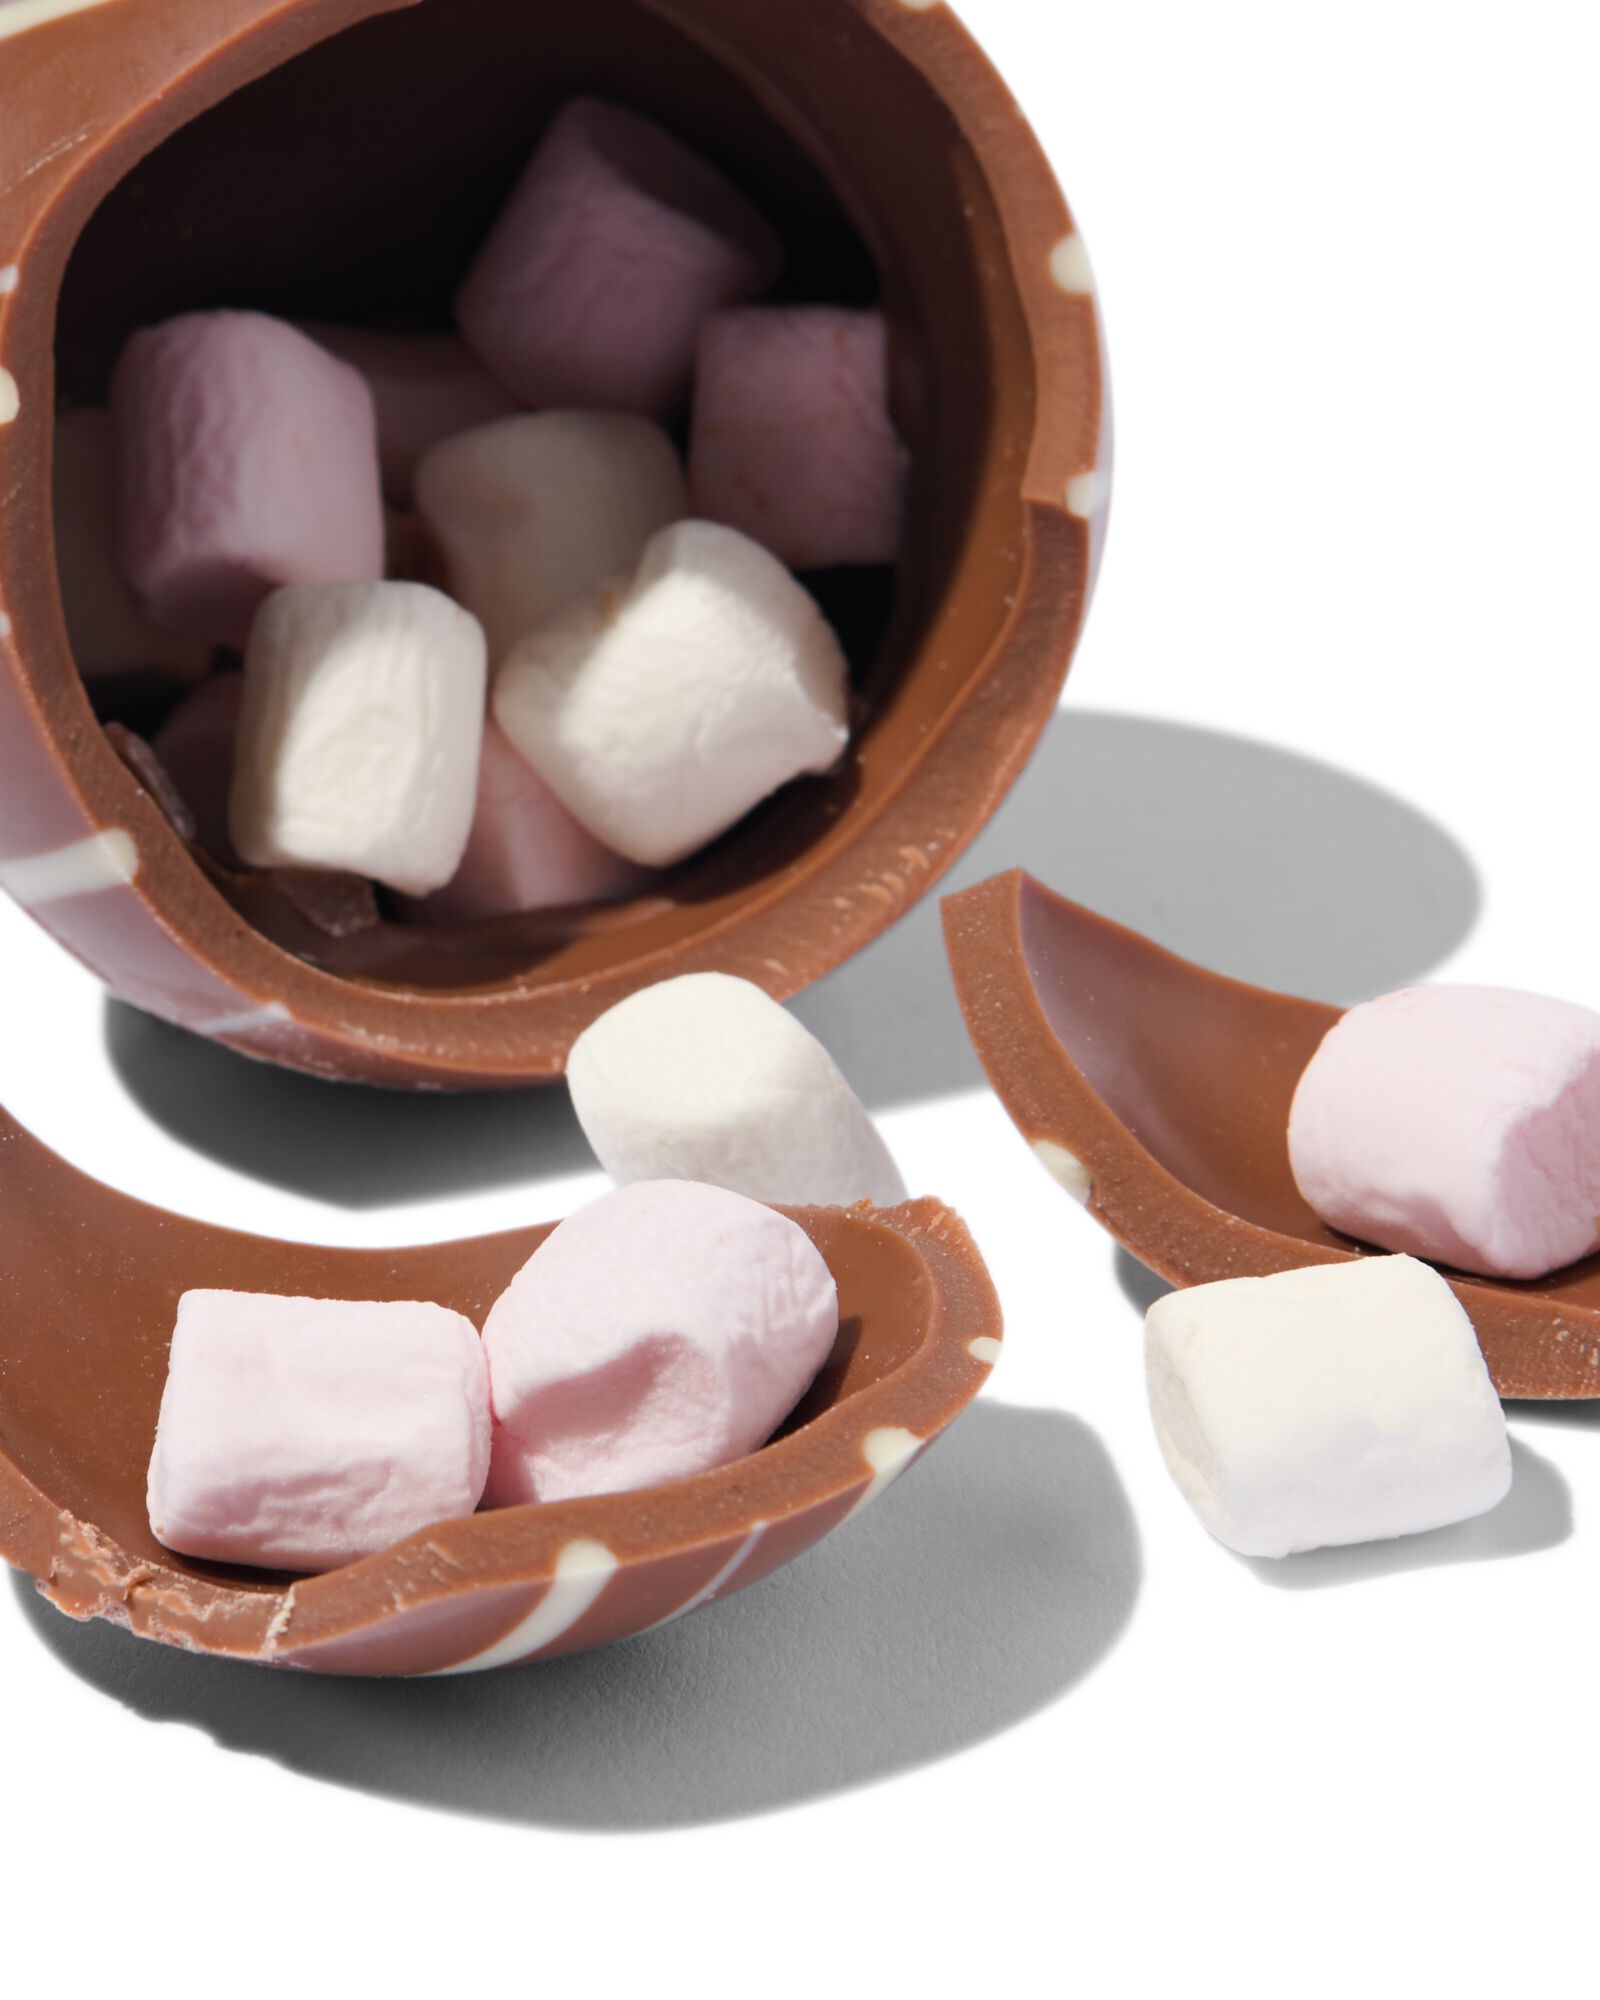 Boule pour chocolat chaud : cacao bio aux mini marshmallows et